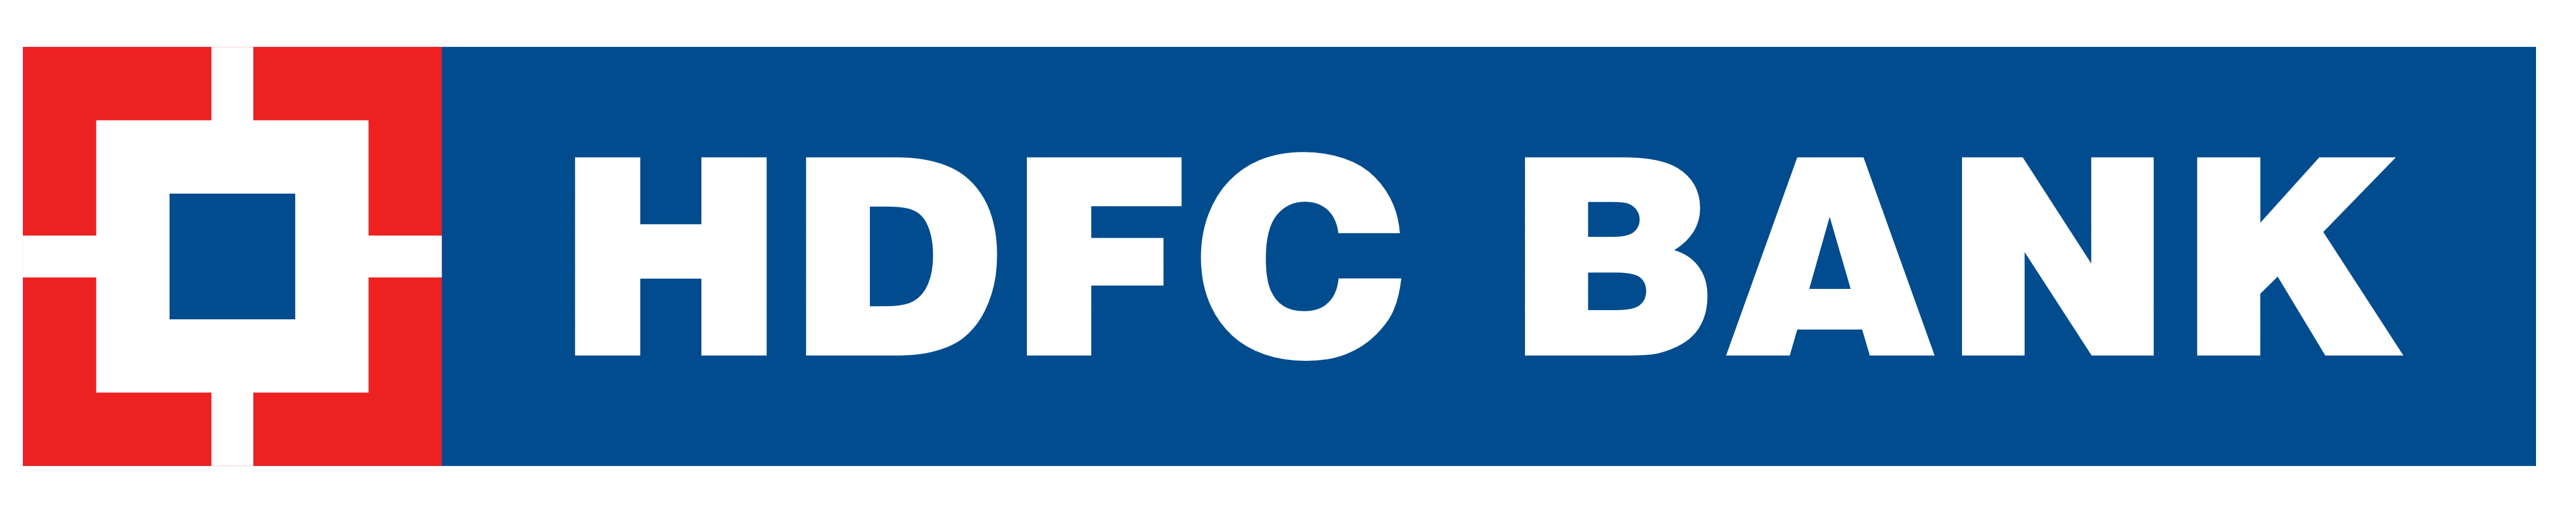 HDFC Bank logo, logotype